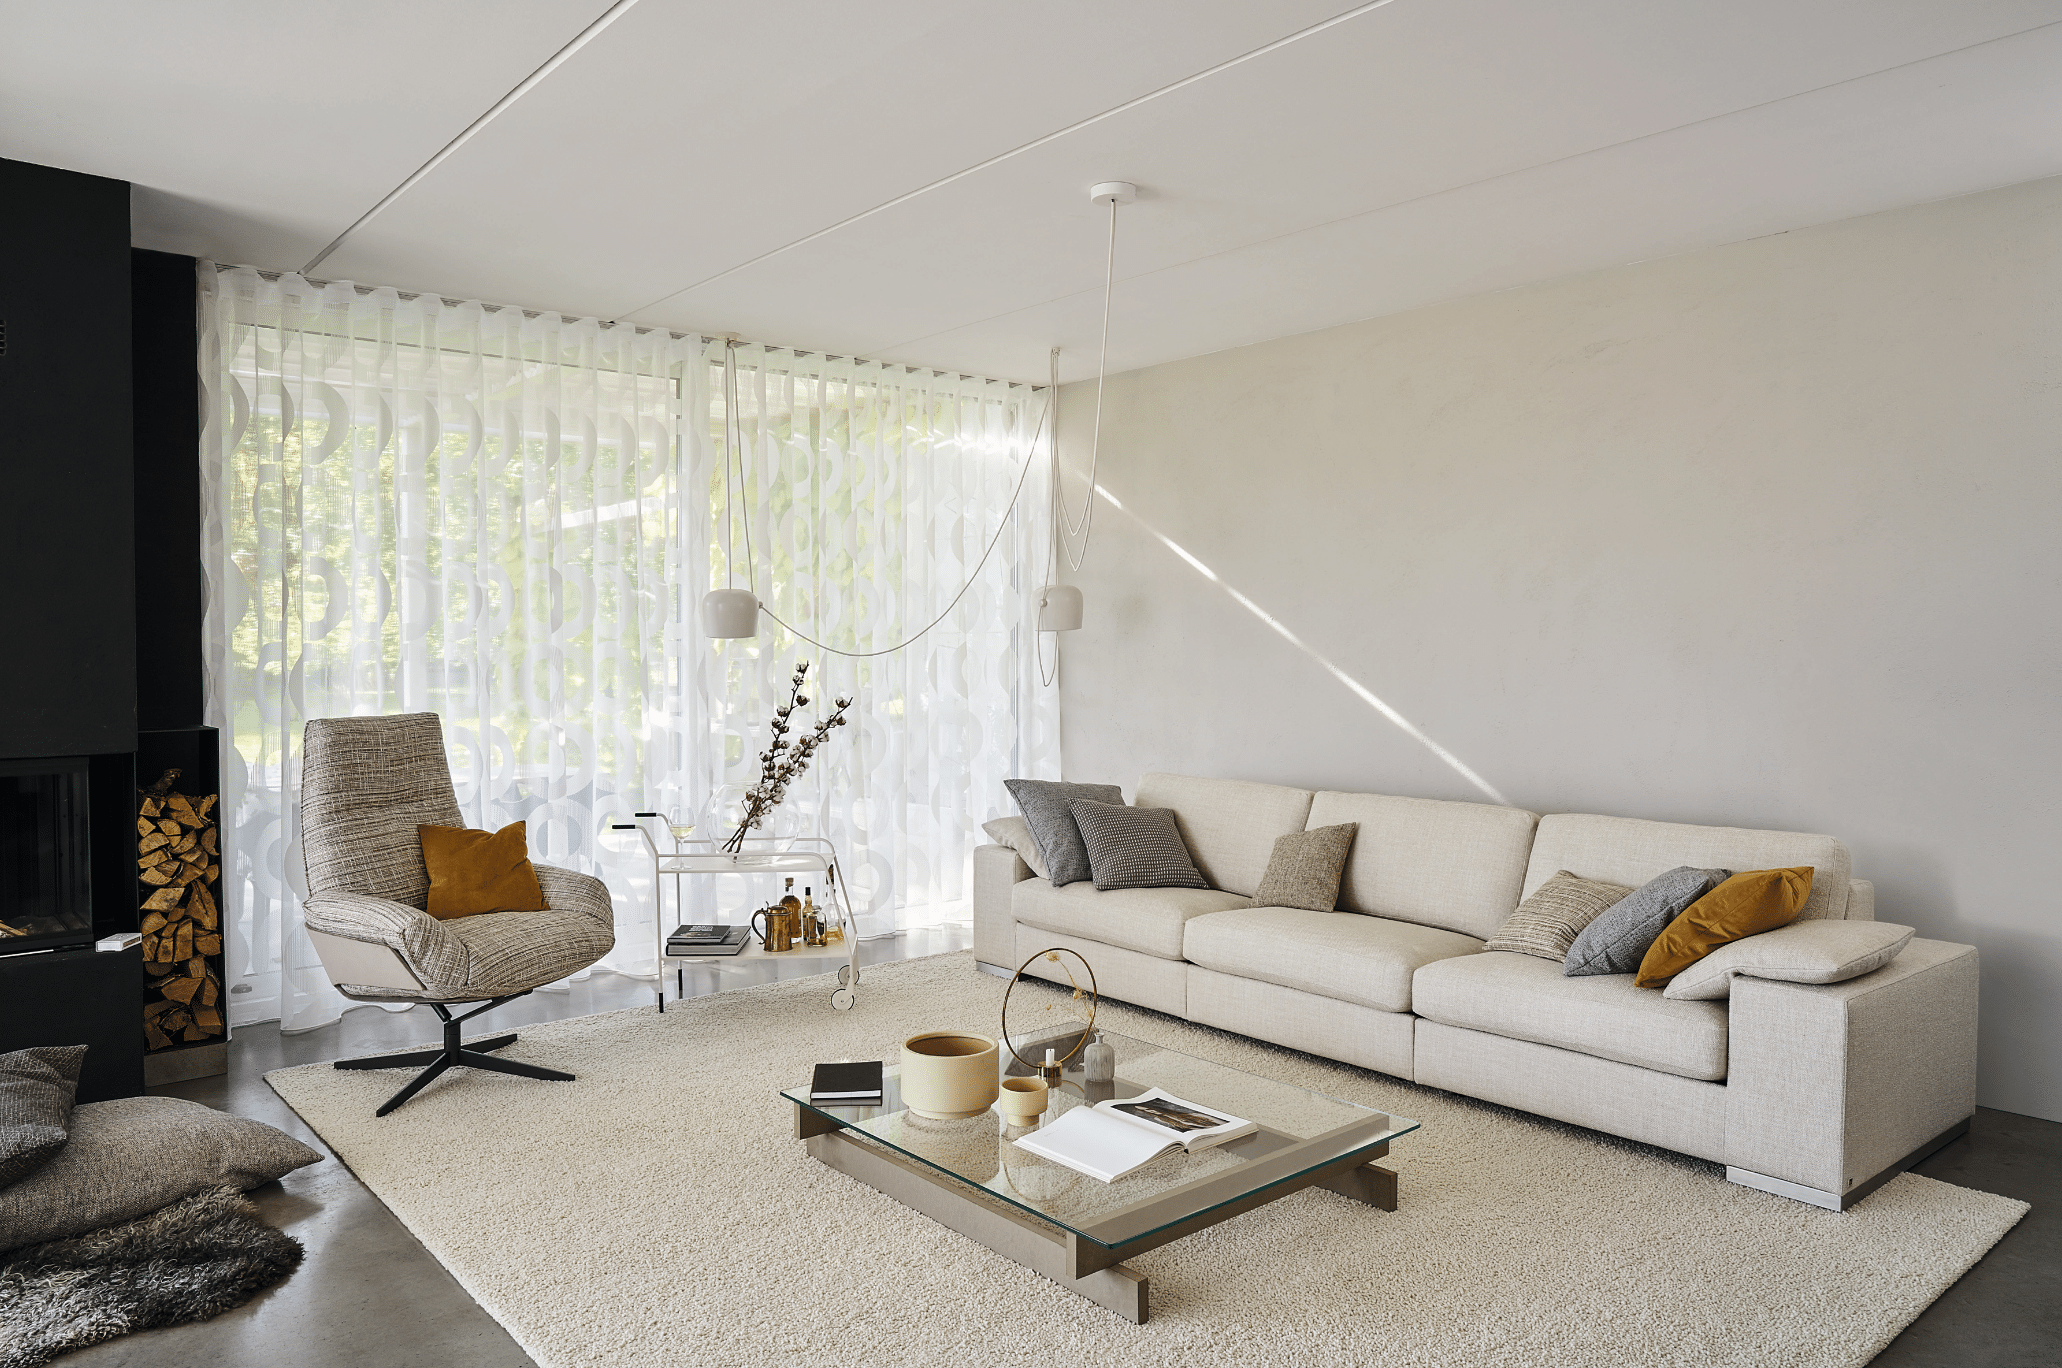 WOHNHAUS Grill & Ronacher zeigt ein Wohnzimmer mit einer langen, weissen Couch, einem freiliegendem Teppich in Naturweiss und einem gemütlichen Ohrensessel von Bielefelder Werkstätten.